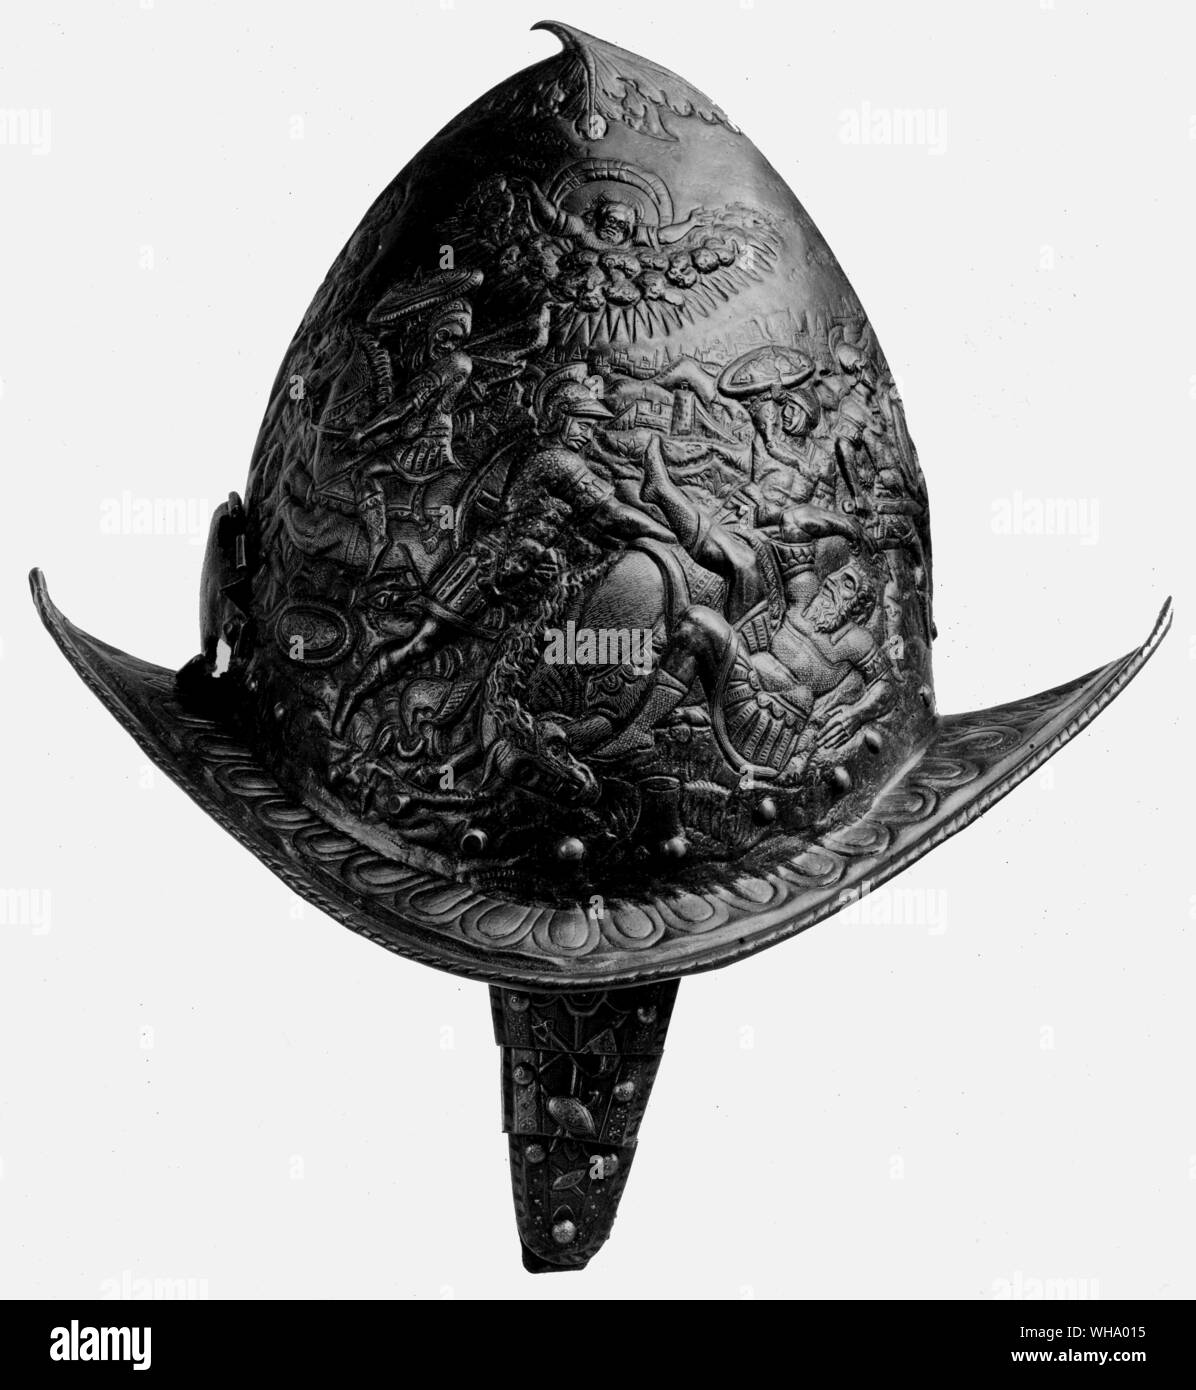 Casco usato nelle battaglie del XIV - XV secolo. Foto Stock